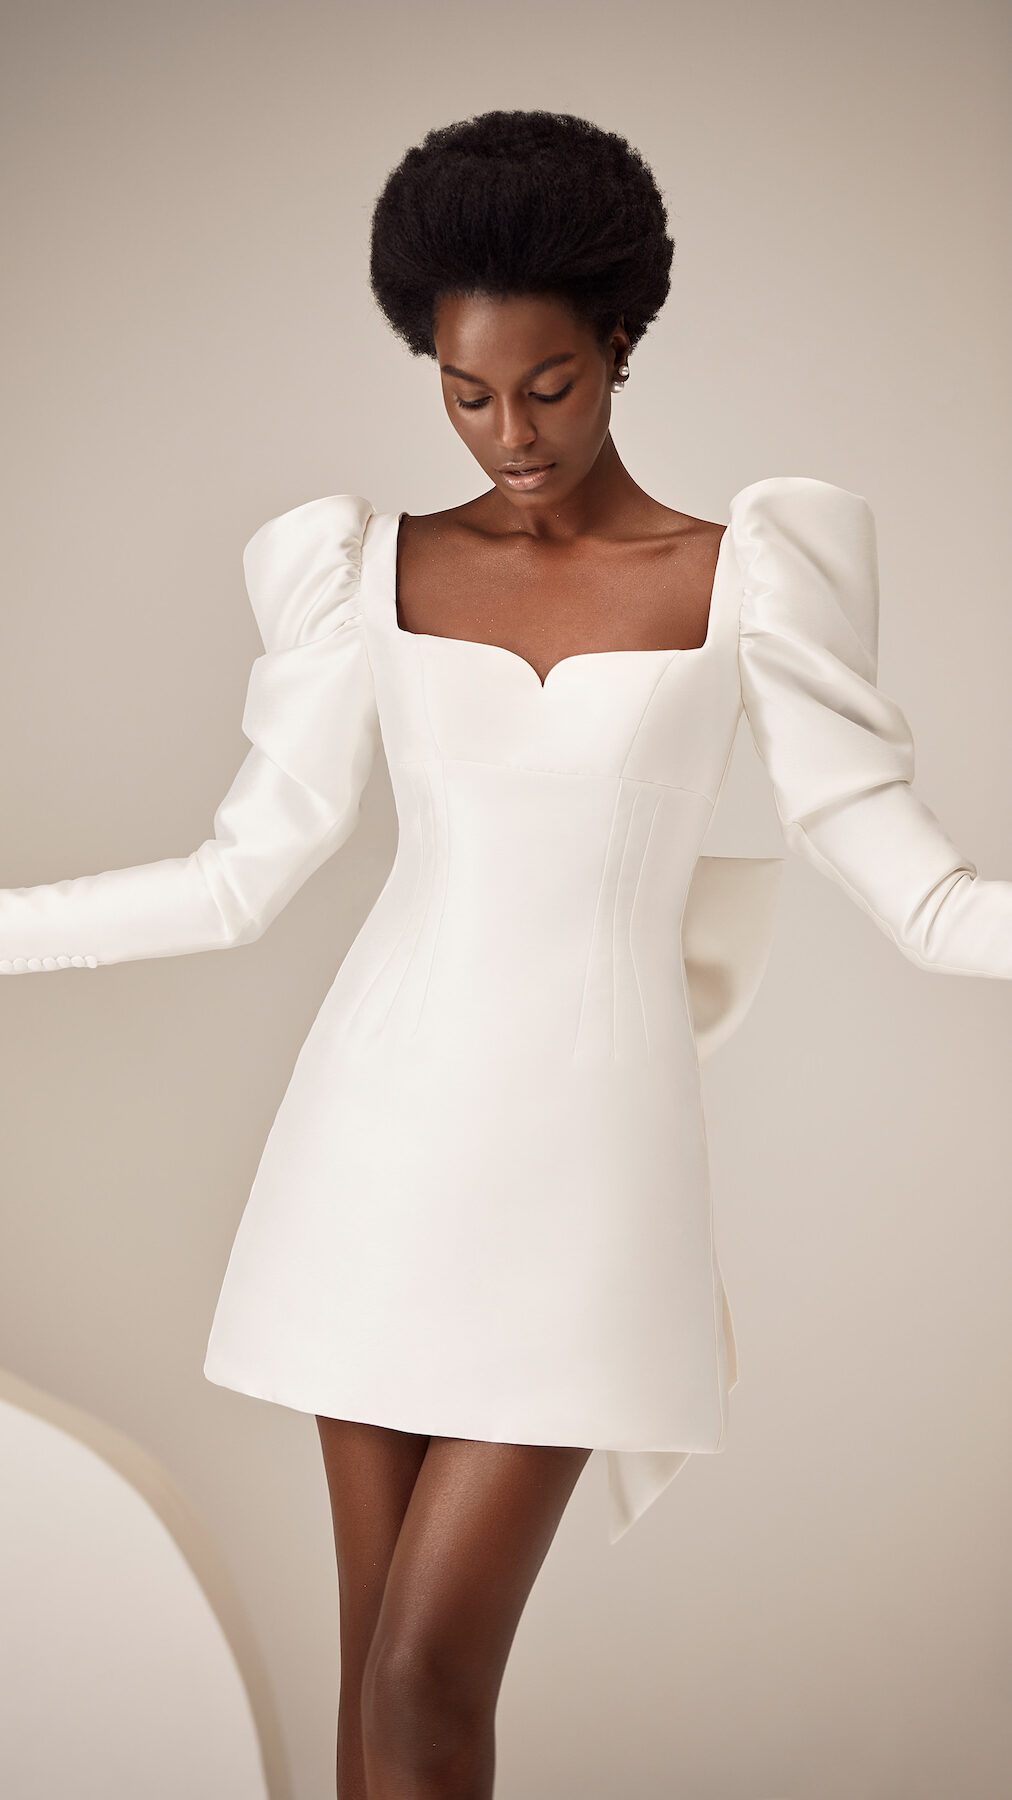 Courthouse Wedding Dress by Milla Nova - Honey white lace